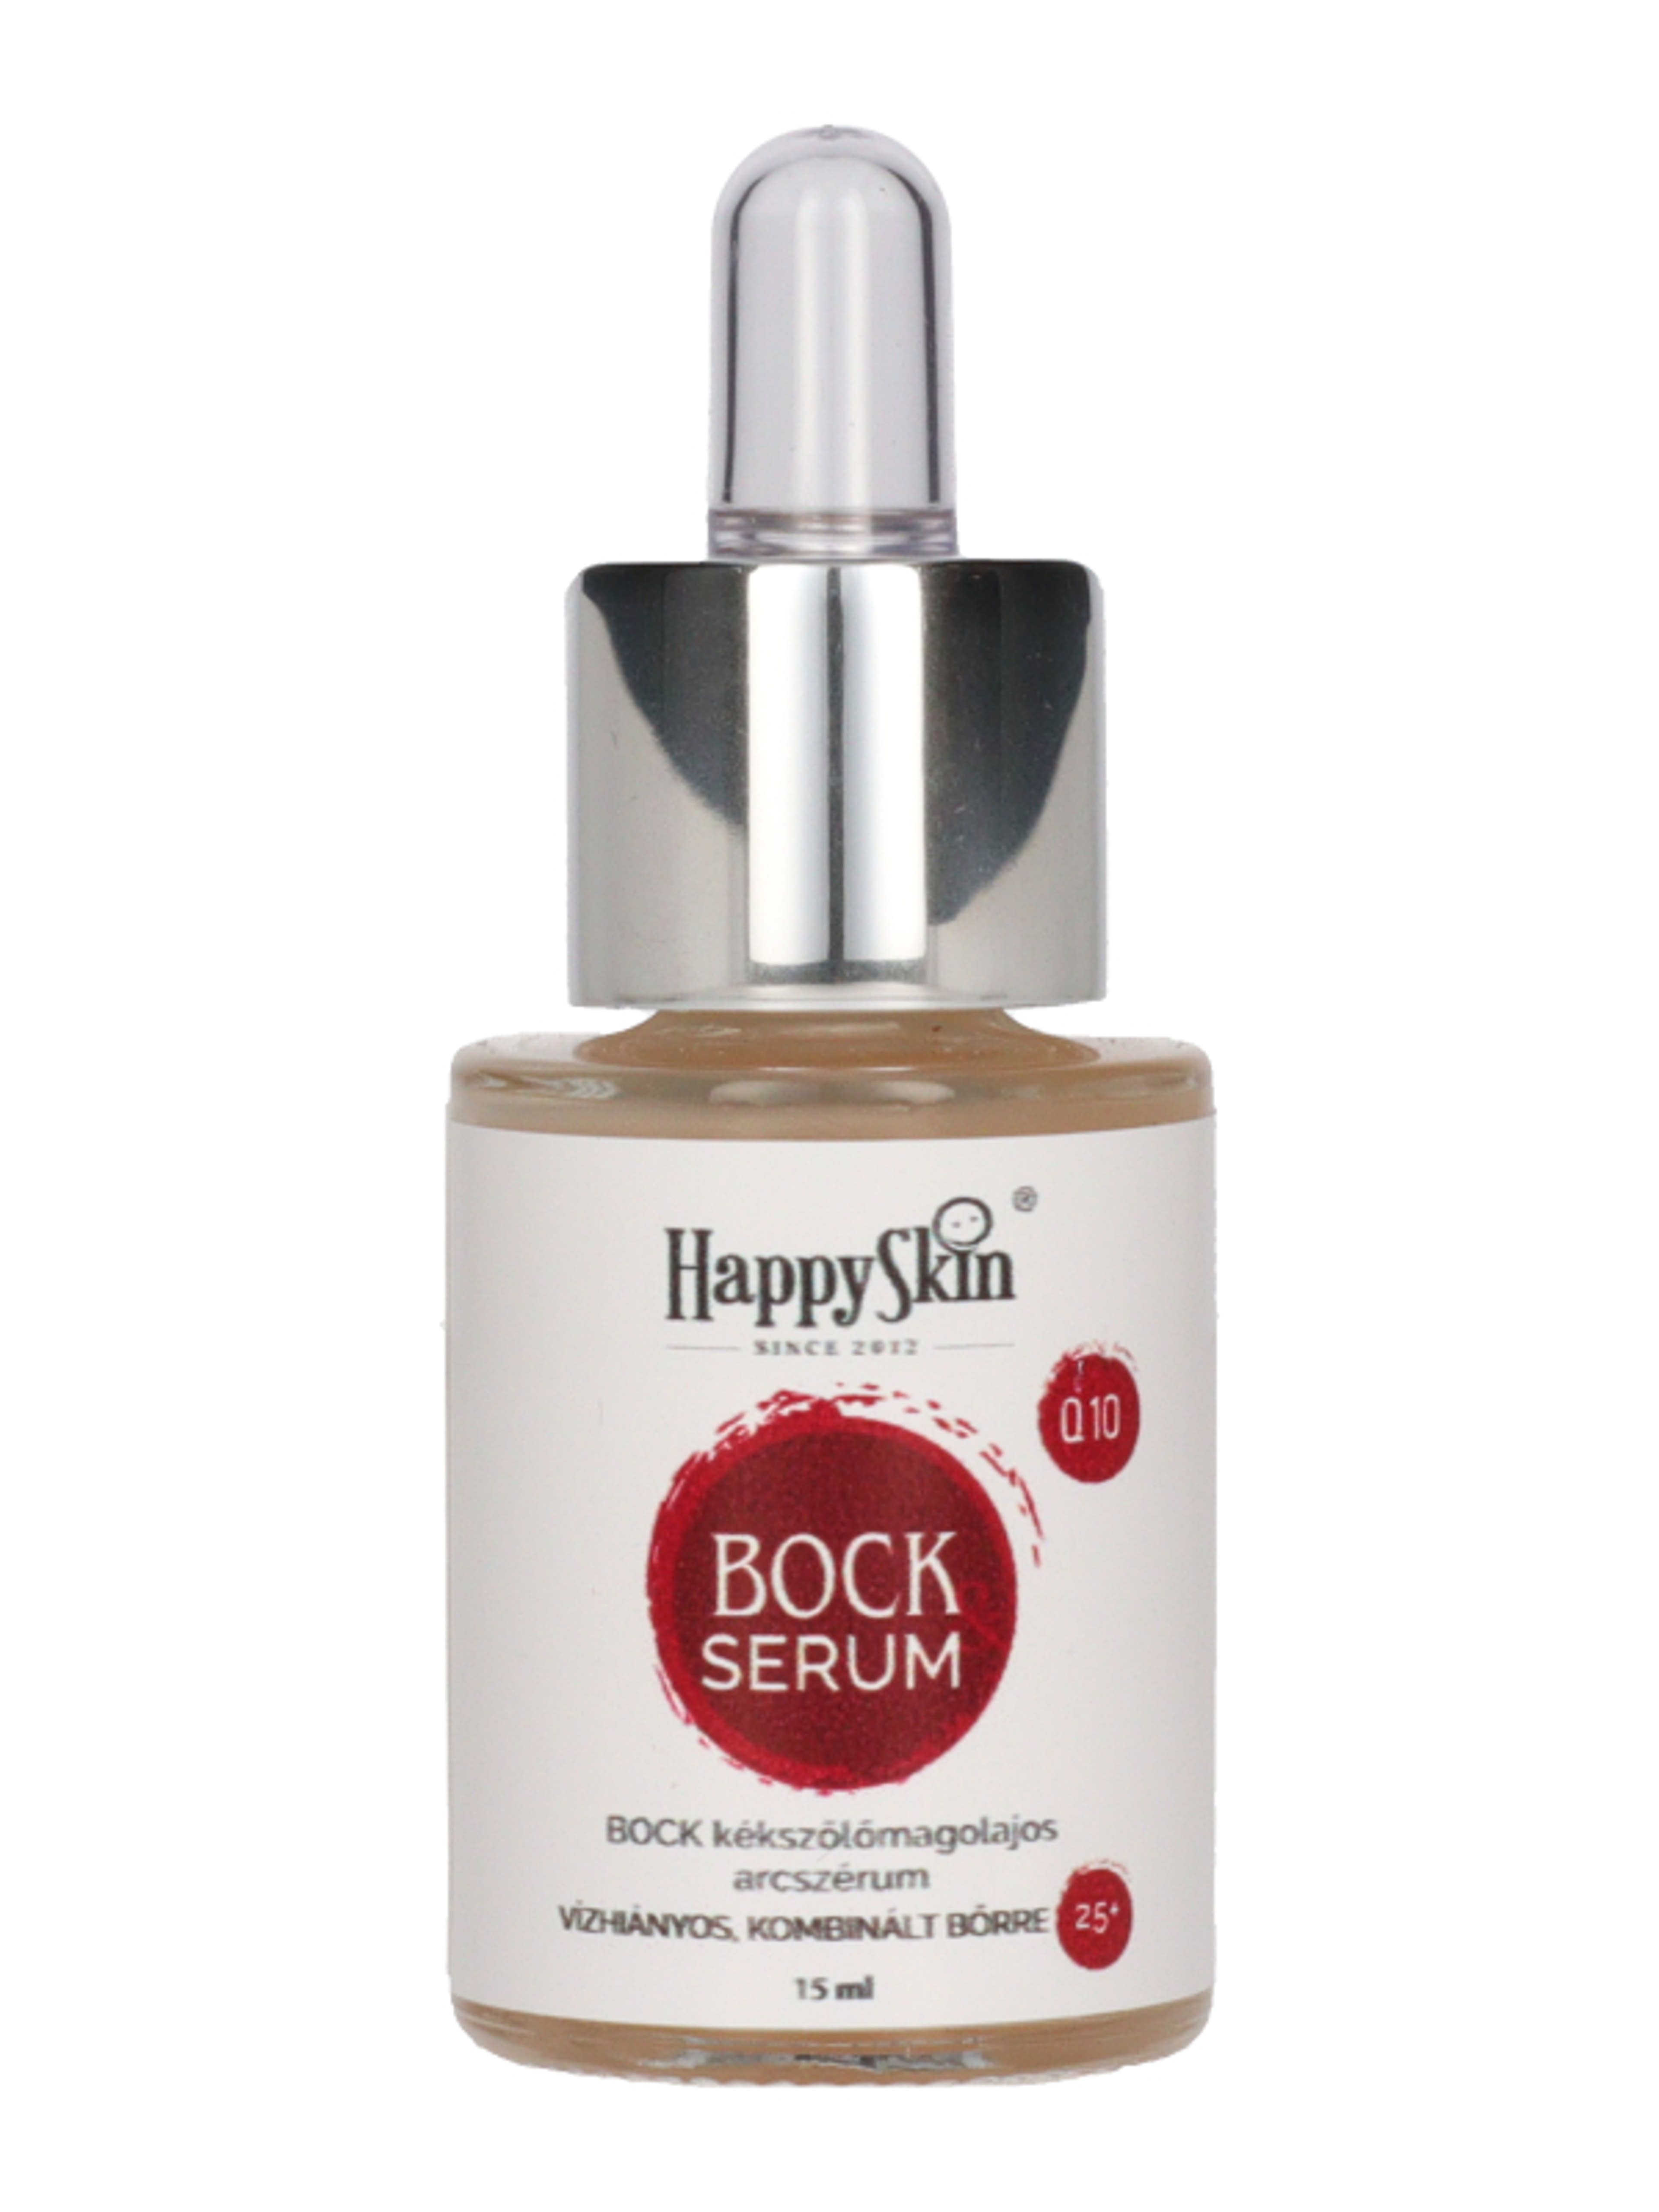 HappySkin Bock szérum - 15 ml